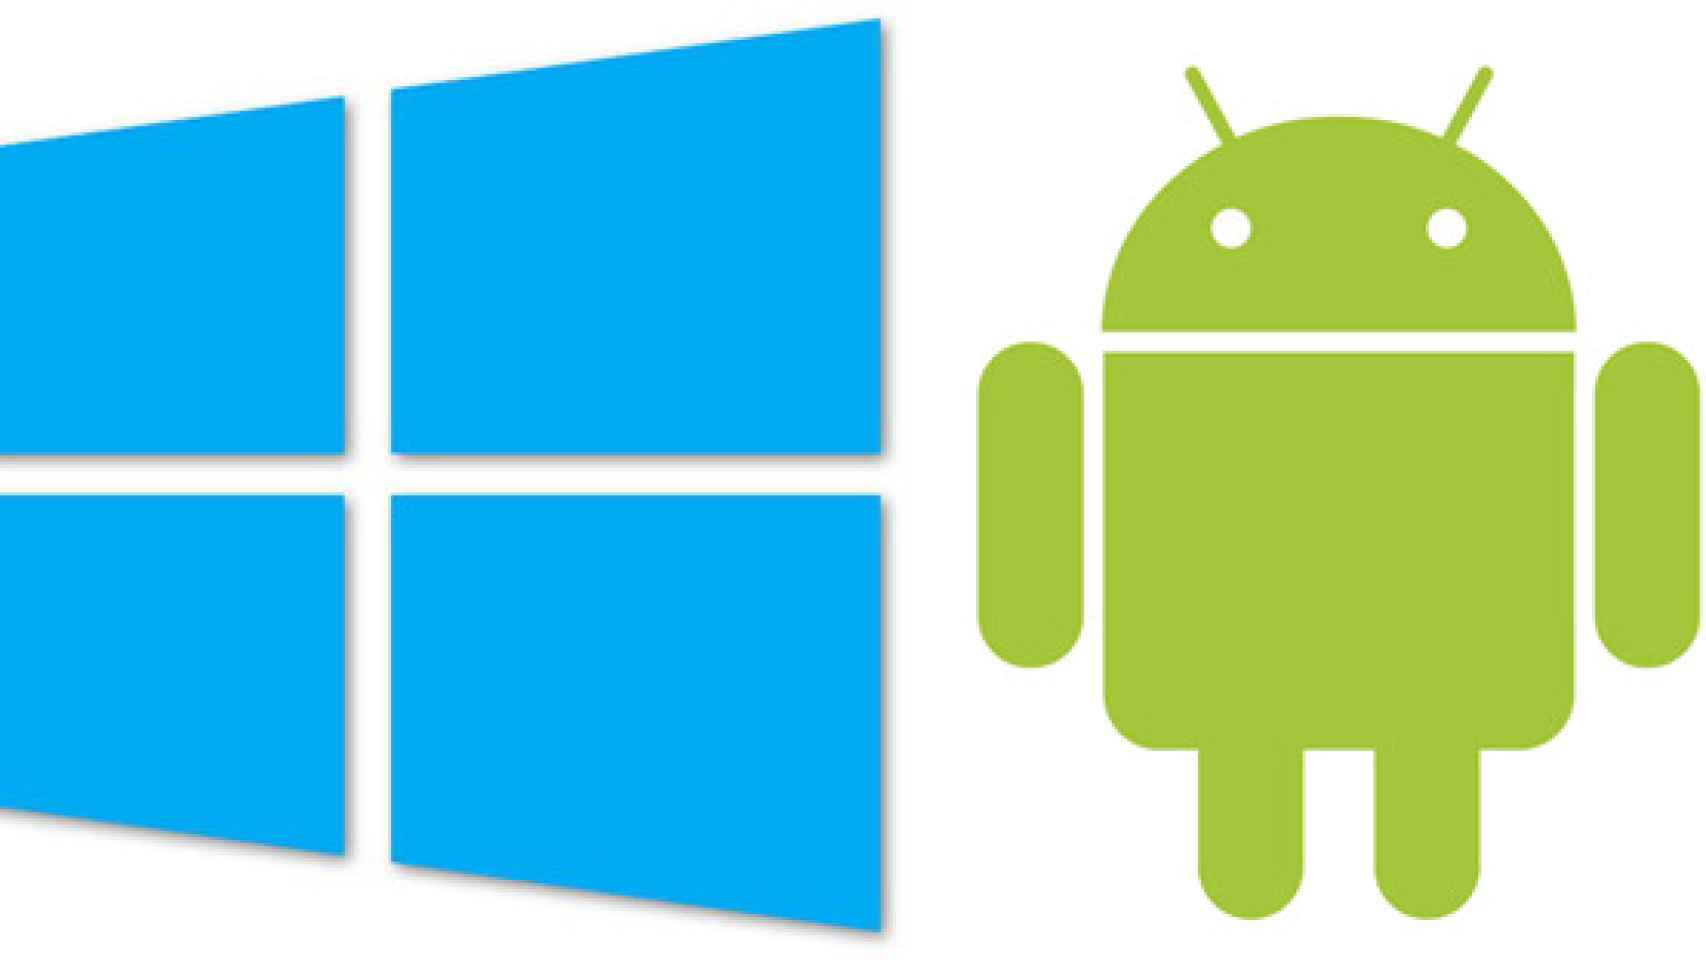 Windows 10, sistema operativo móvil y de escritorio. ¿Debería Google hacer lo mismo con Android?